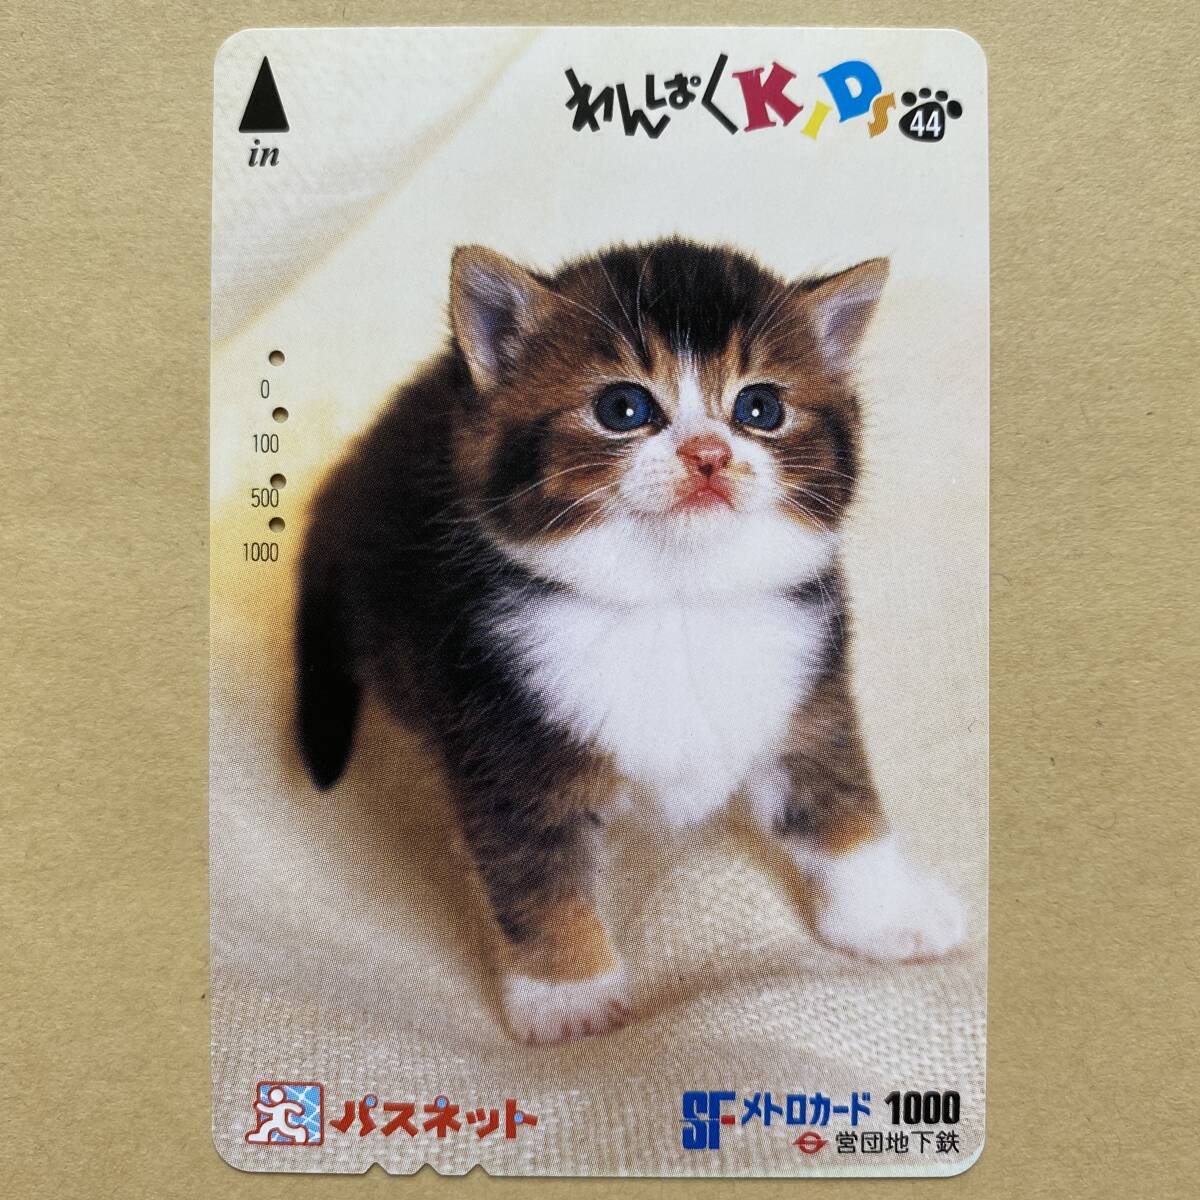 【使用済】 パスネット 営団地下鉄 東京メトロ わんぱくKIDS44 猫_画像1